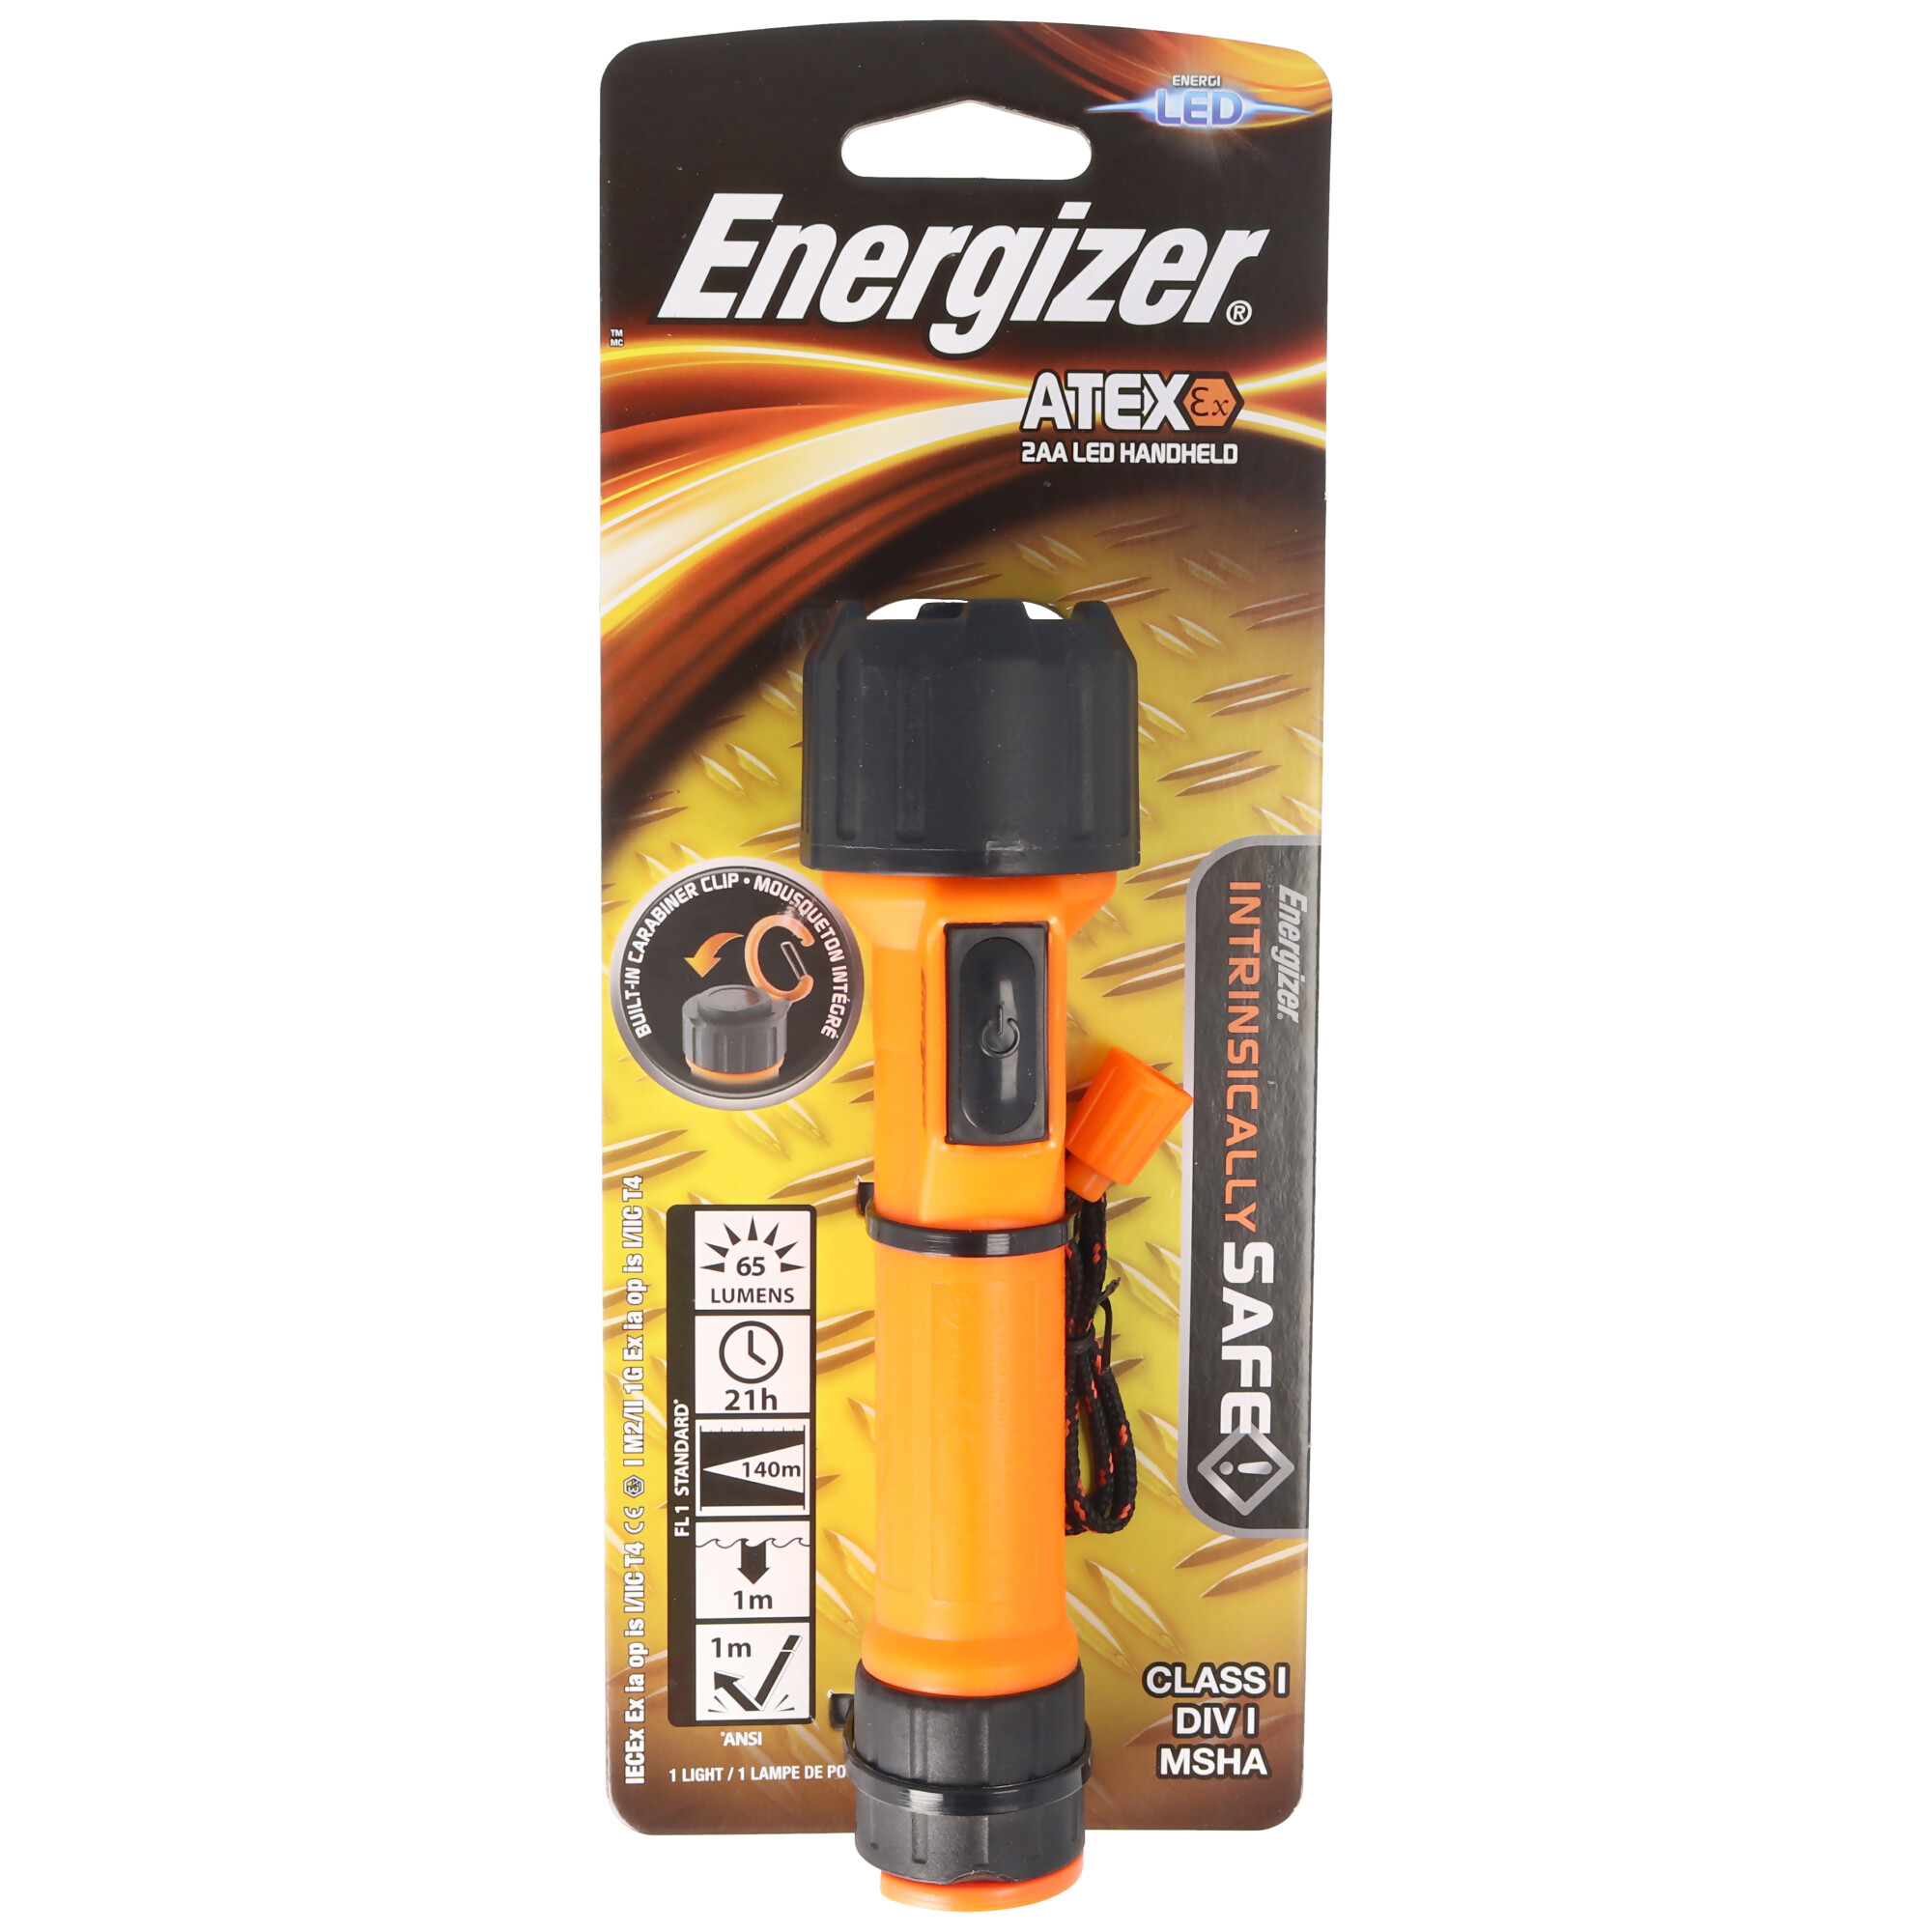 Energizer ATEX 2AA LED-Taschenlampe Ex-geschützt Zone 1 für 2 Mignon AA Batterien